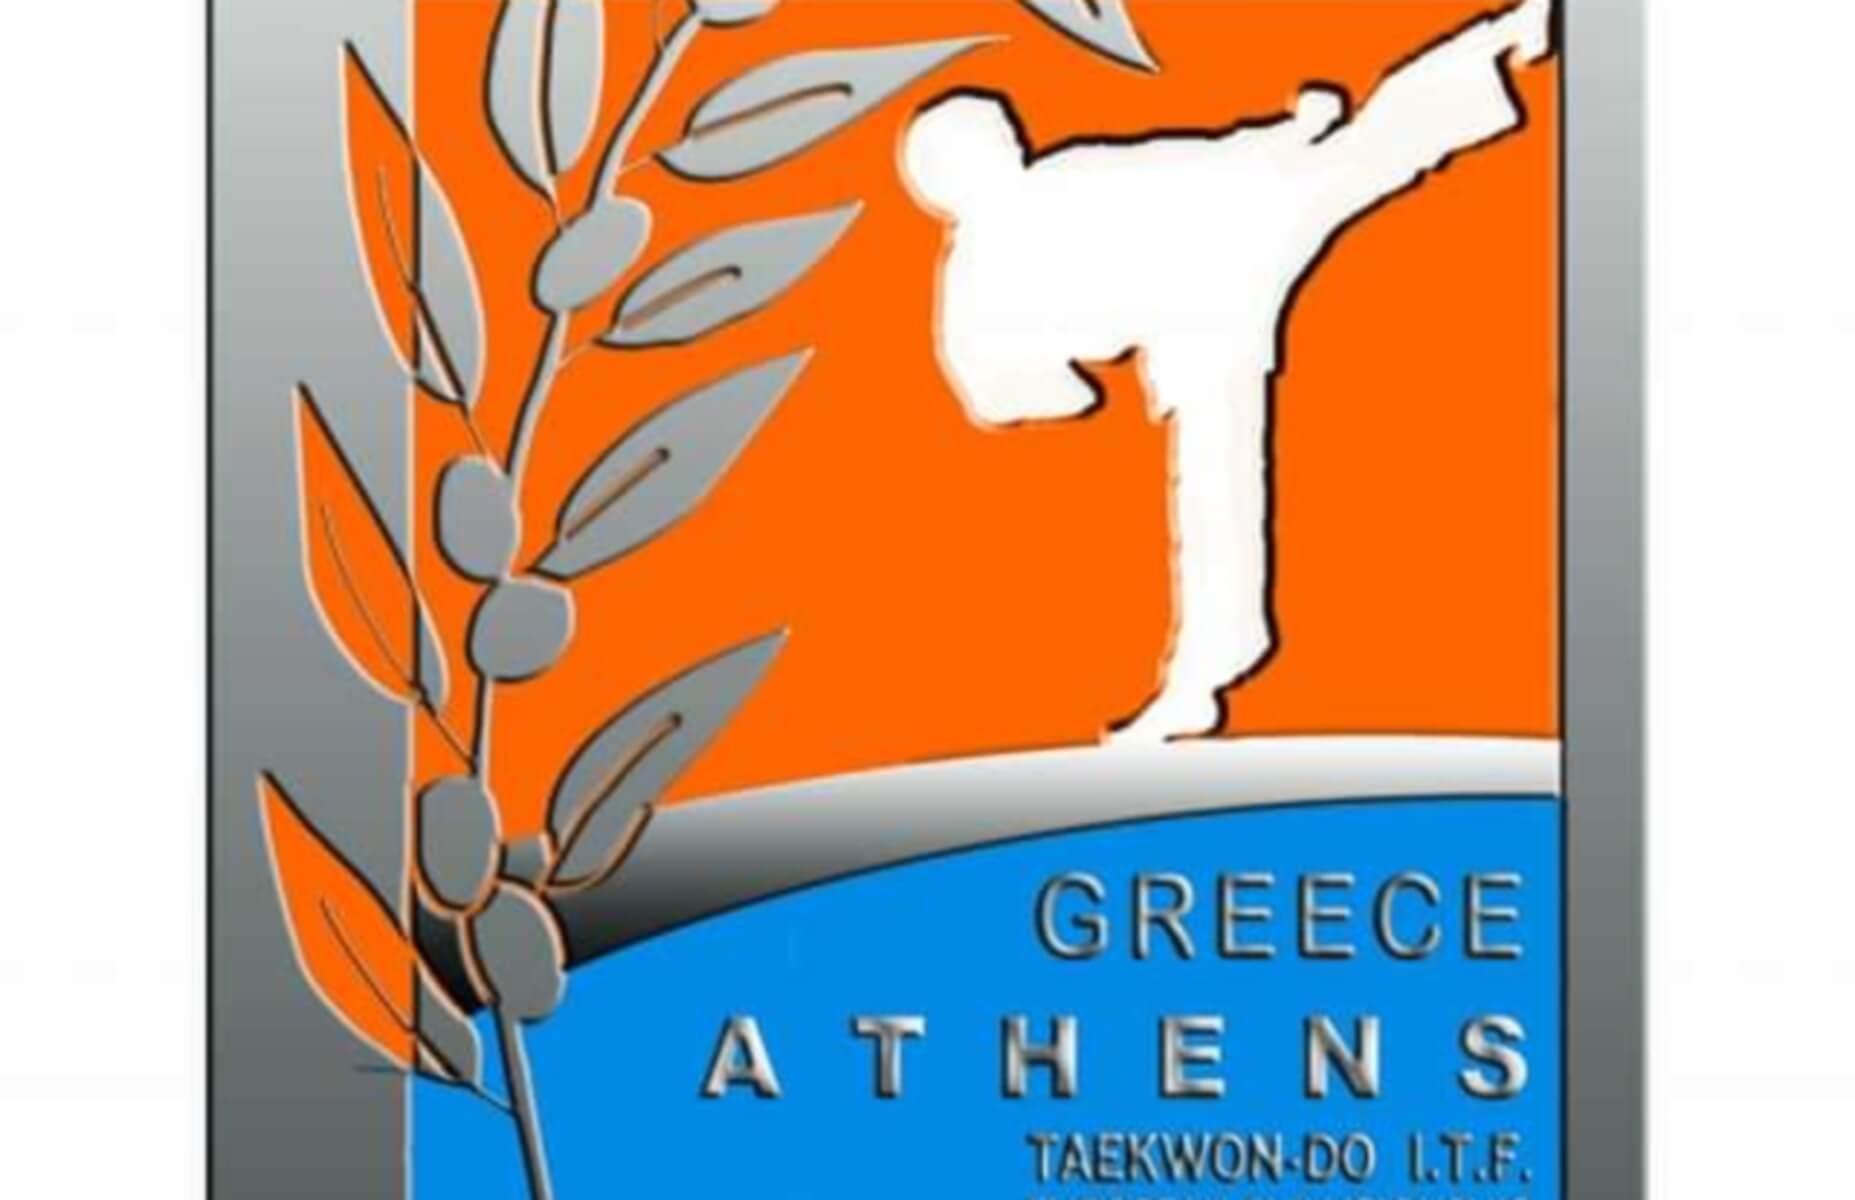 Στην Αθήνα το Ευρωπαϊκό Πρωτάθλημα ταε κβο ντό itf του 2021!